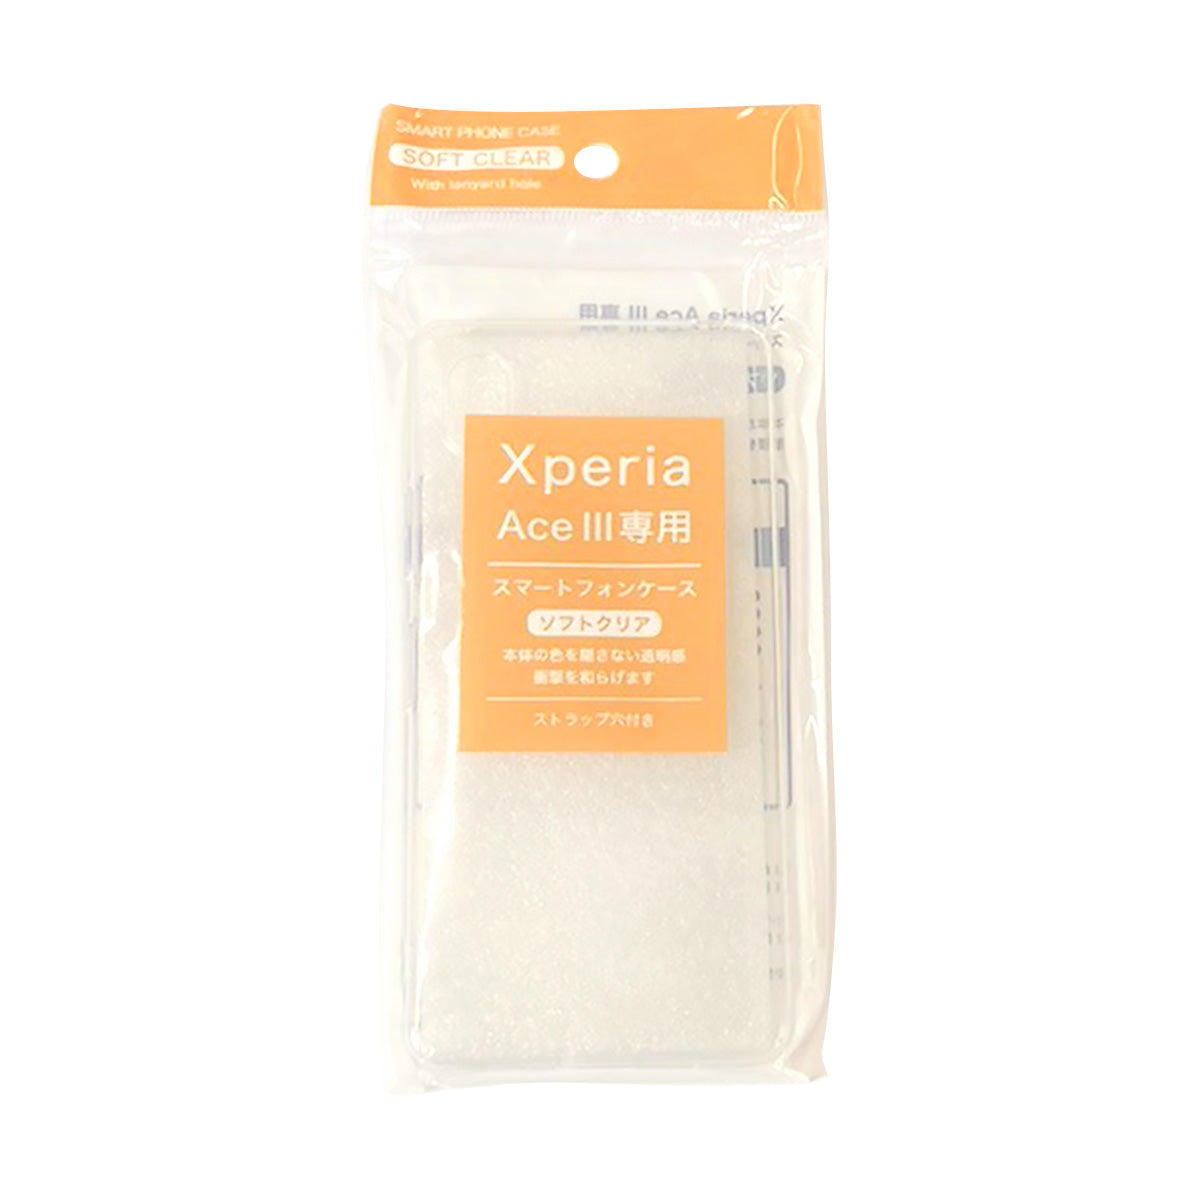 スマホケース Xperia ACEiii スマートフォンケース 350673